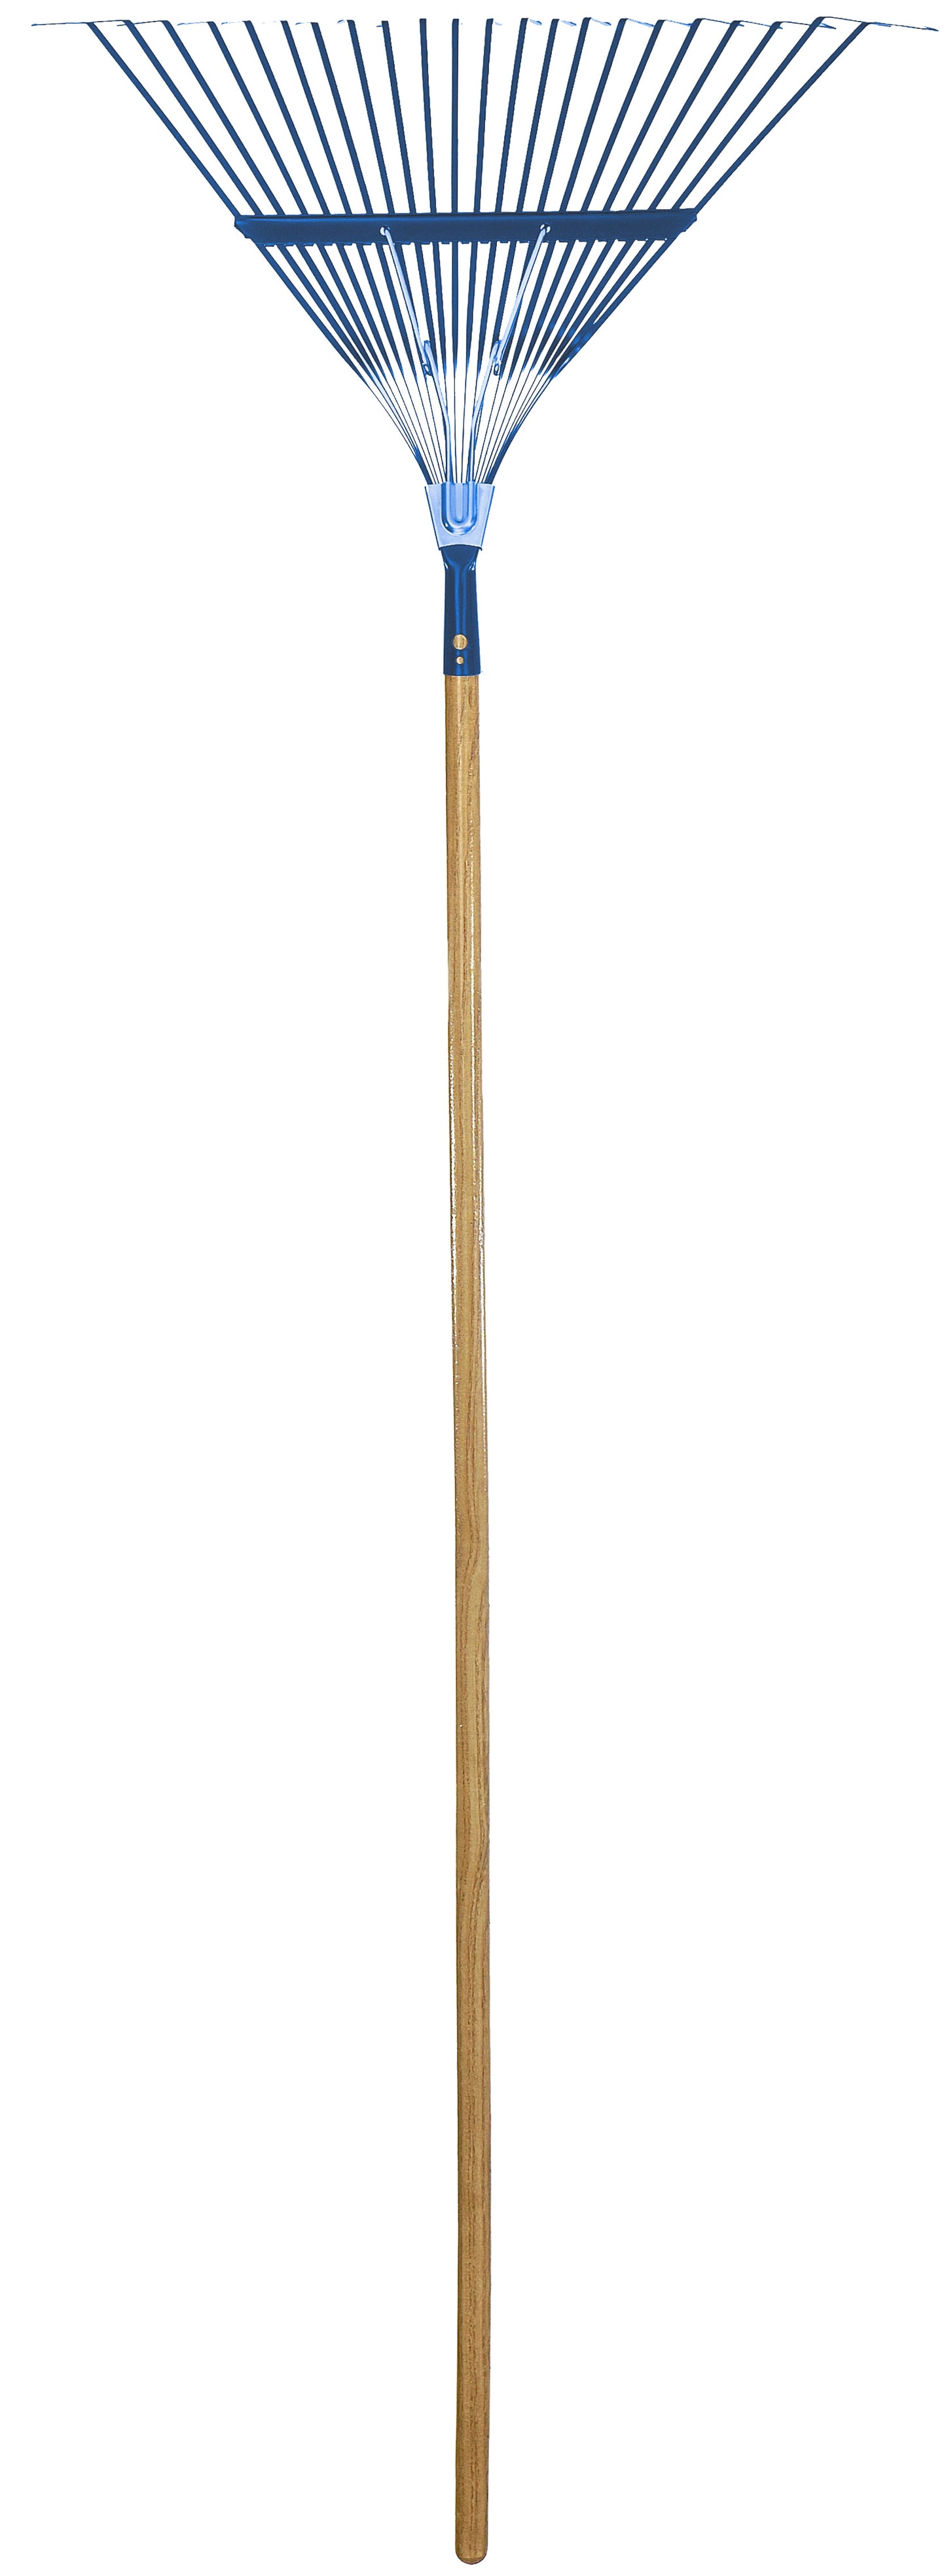 Springback lawn rake, 22 steel tines, wood handle